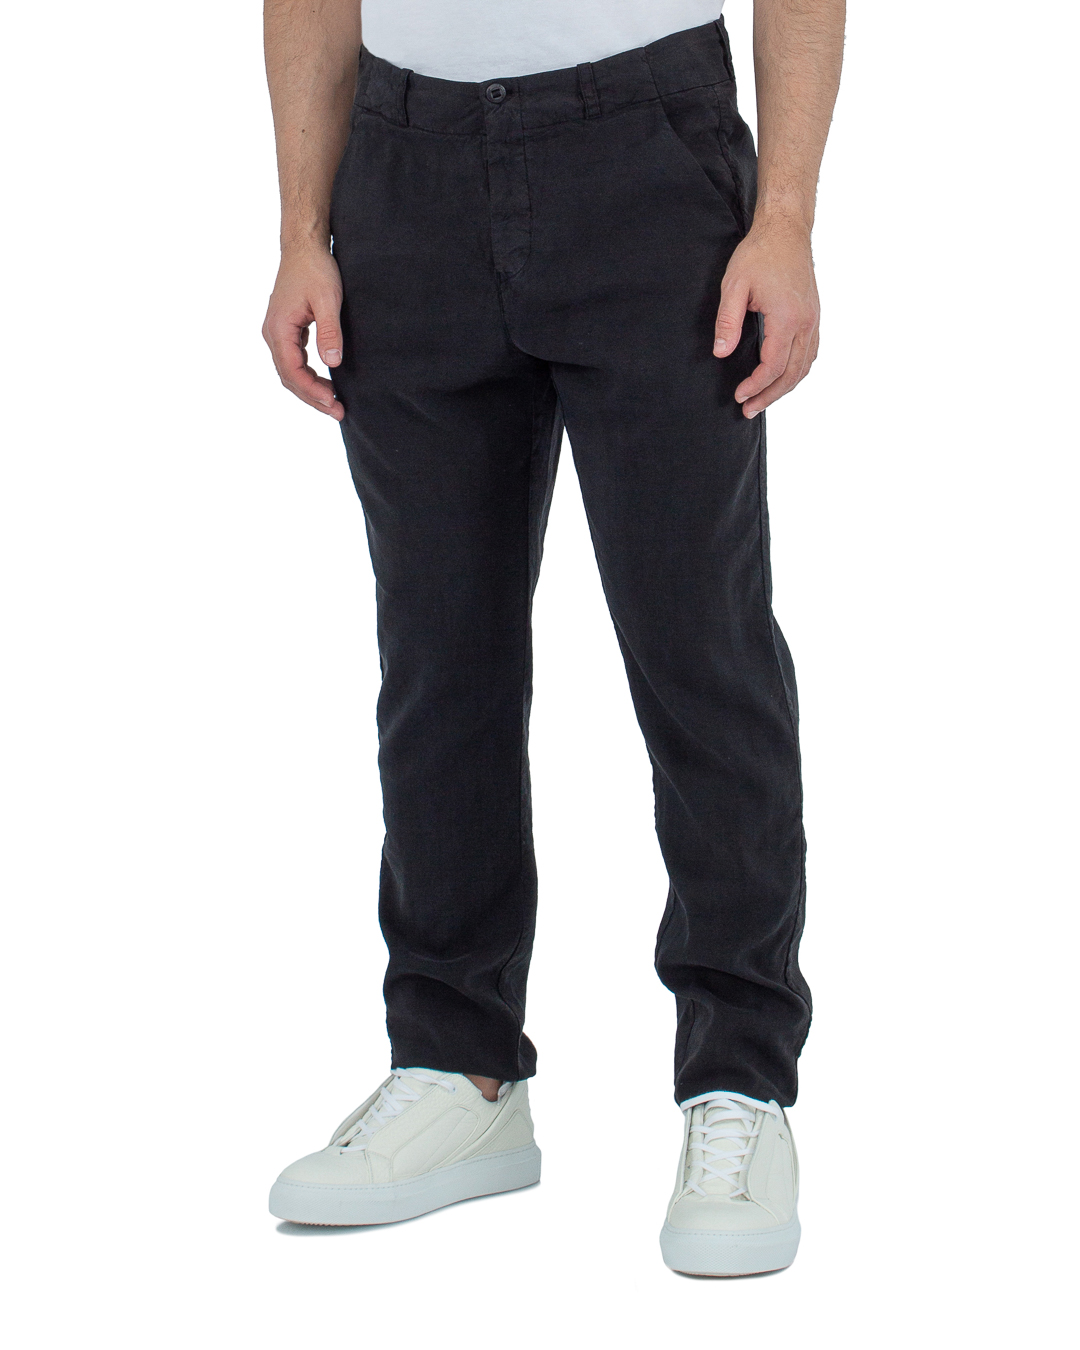 брюки Hannes Roether 110632/600 черный xl, размер xl 110632/600 110632/600 черный xl - фото 3